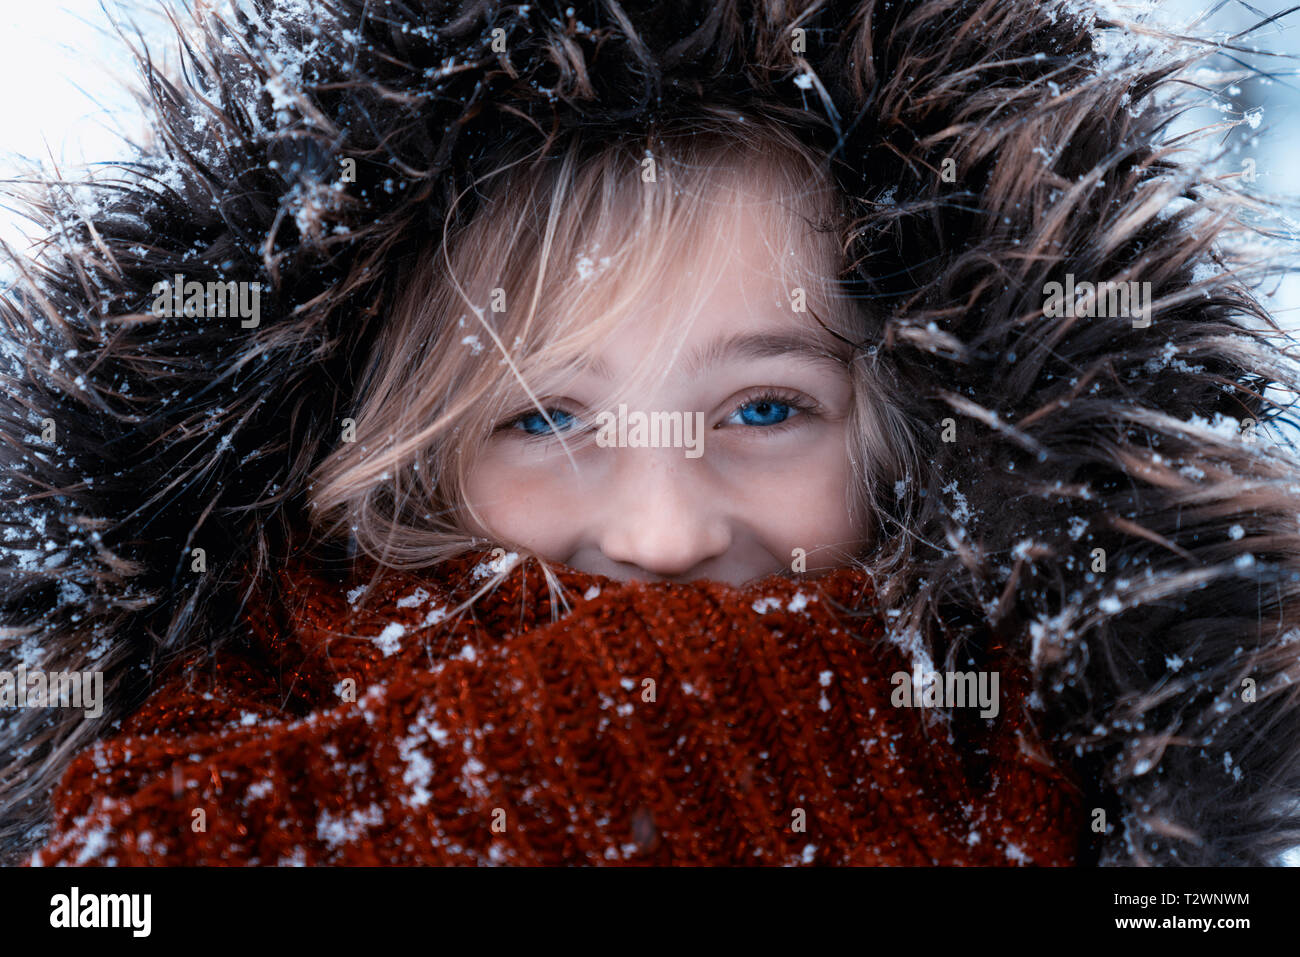 Portrait d'une jolie fille avec de beaux yeux bleus sur un froid jour de neige en hiver. Elle est habillée dans des vêtements chauds Banque D'Images